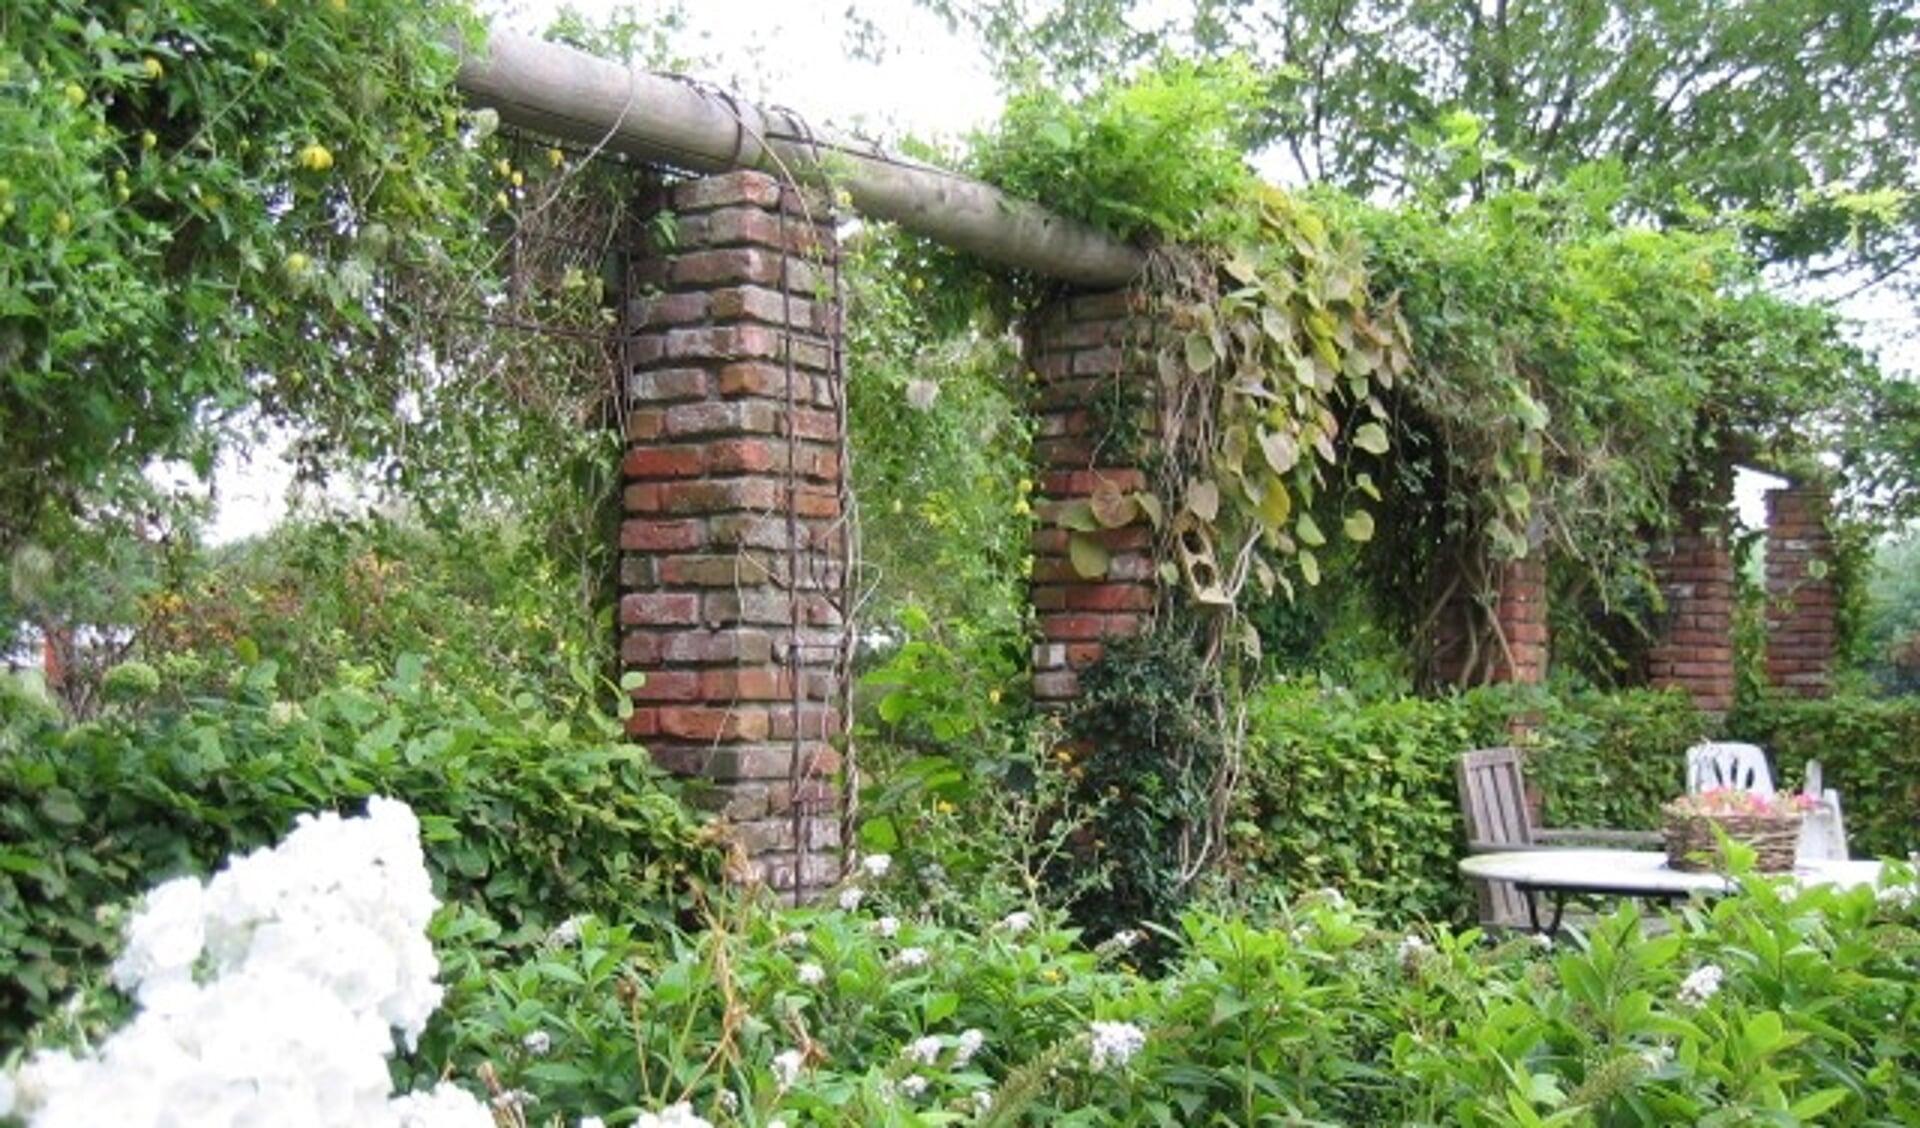 't Kasje van Basje in Ovezande is een van de te bezichtigen tuinen.